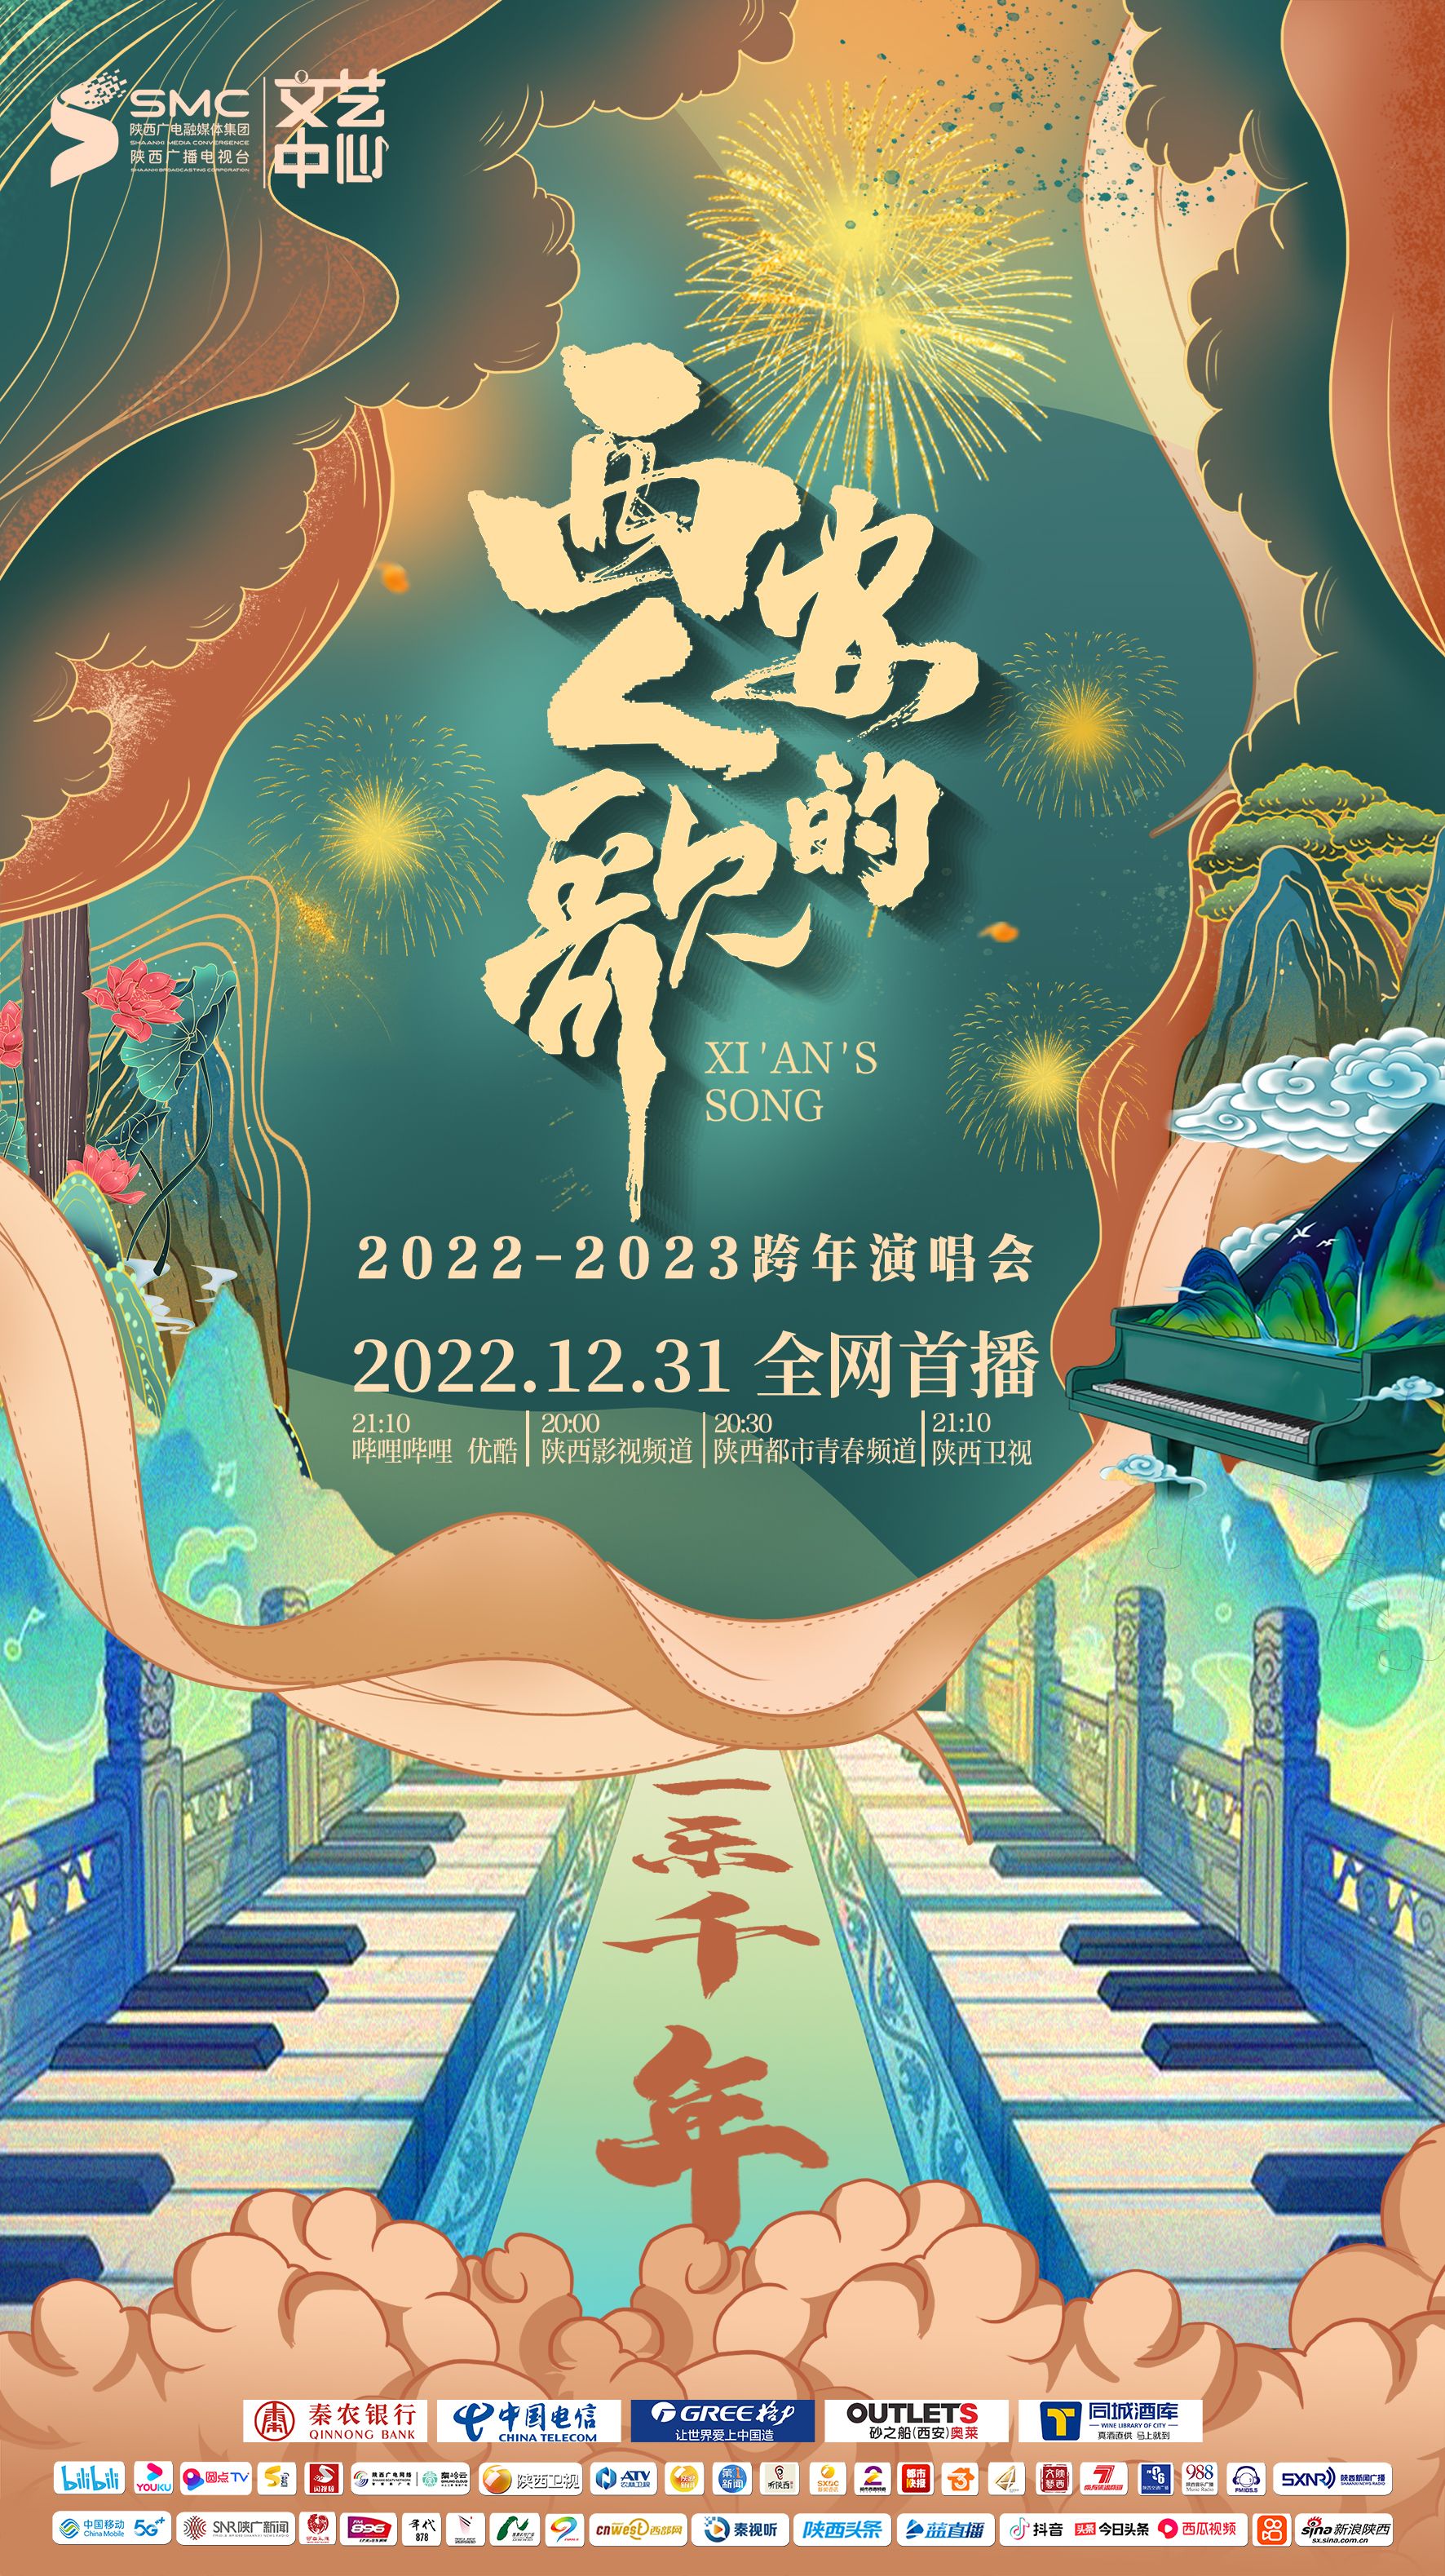 西安人的歌一乐千年2022-2023跨年演唱会/西安人的歌·一乐千年跨年演唱会2023